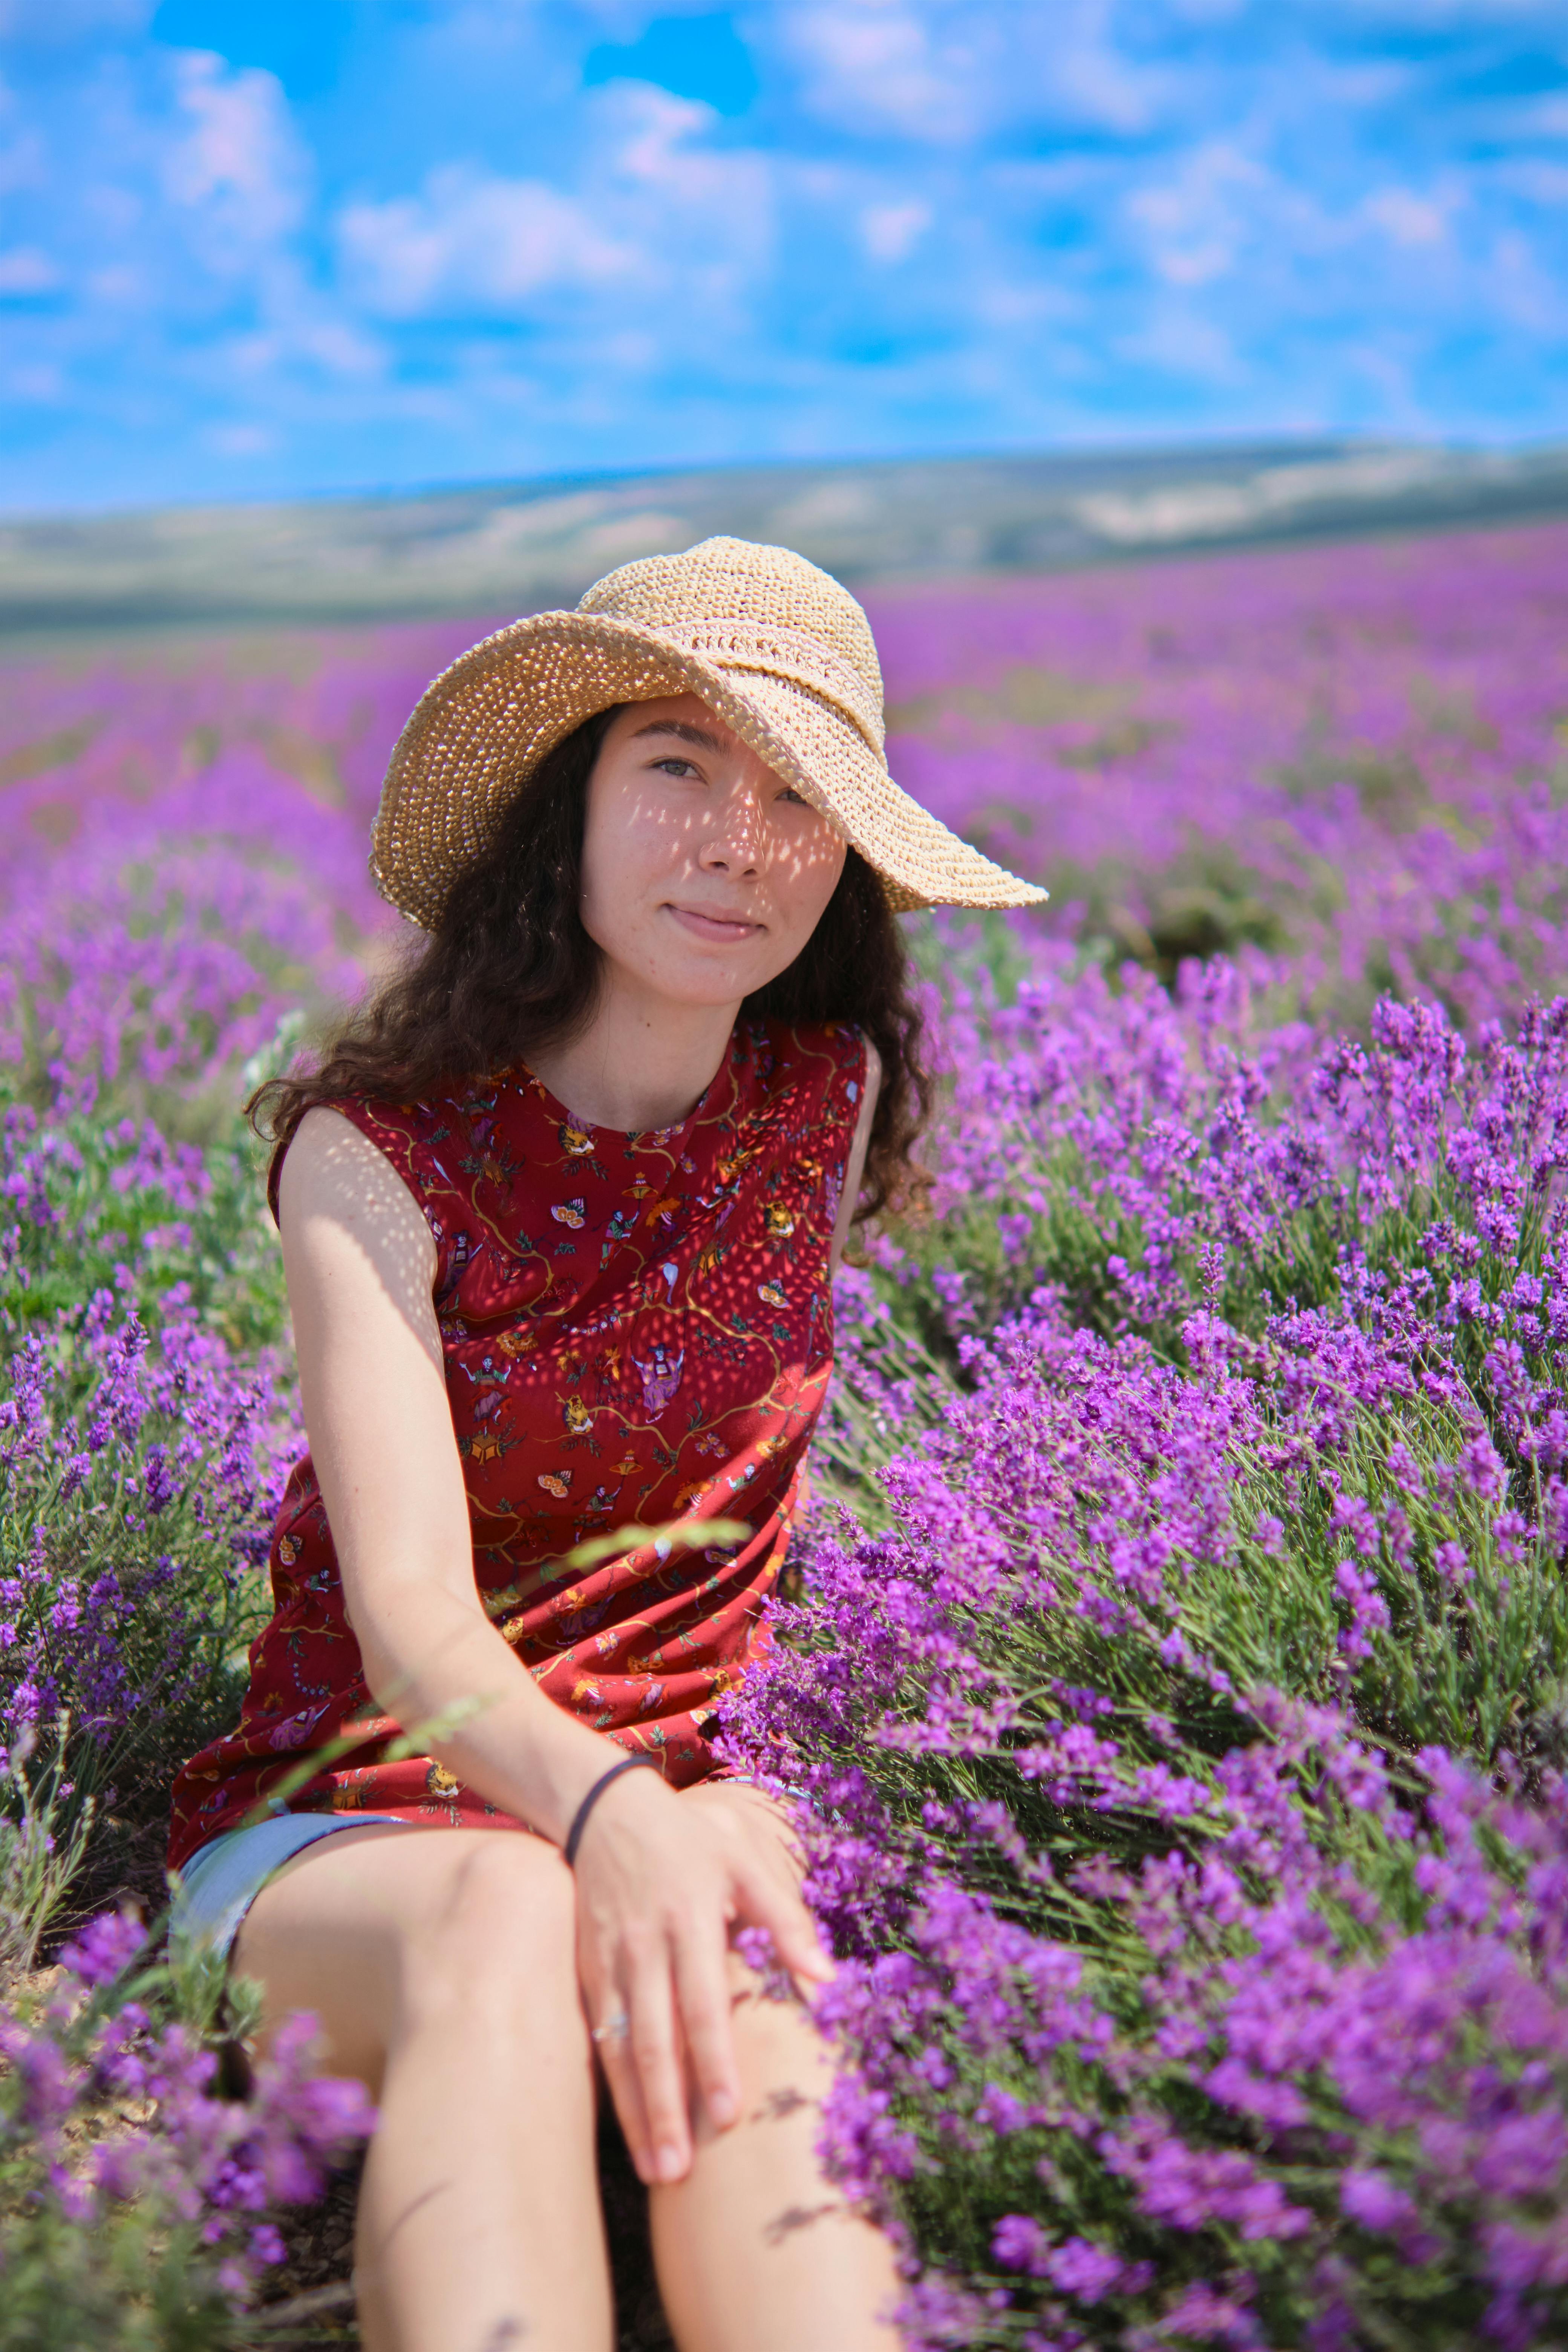 Đồng quê hoa lavender: Bức hình này giữa mẫu cảnh hoang sơ, giữa vùng đồng quê nơi hoa lavender nở rộ, sẽ đưa bạn đến với một mảnh đất trù phú với giá trị thiên nhiên nhiều đẹp như tranh vẽ. Làn gió thoang thoảng, sắc hoa tím xé nét trên nền xanh biếc.